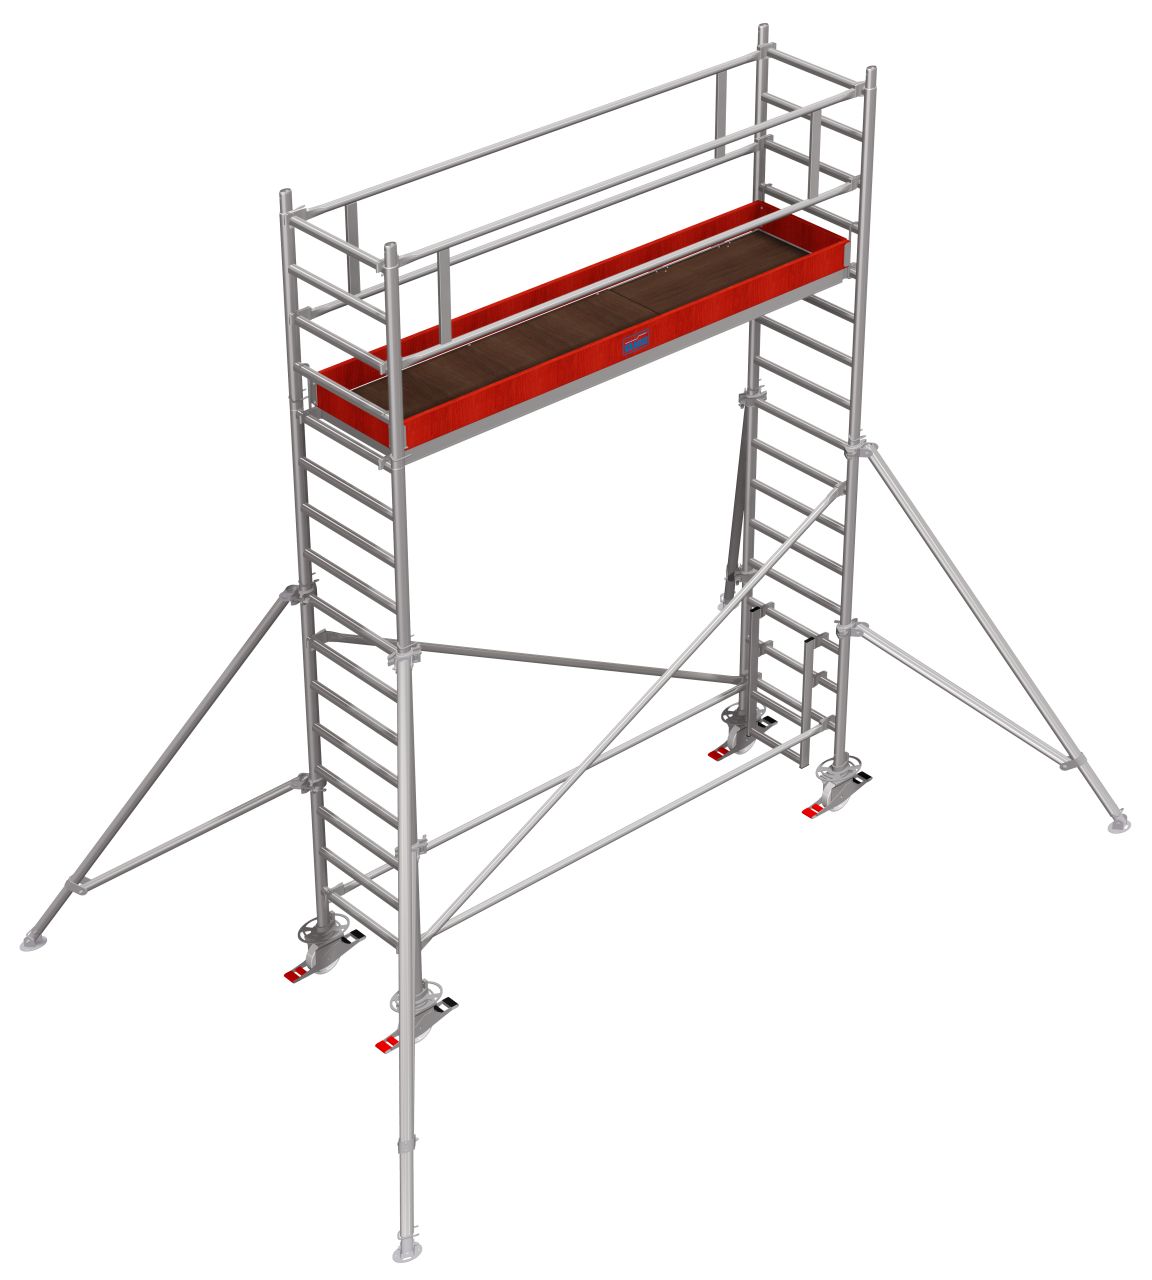 Дополнительное изображение Stabilo серии 1000 рабочая высота 5,2 м, размер площадки (3x0.75 м)